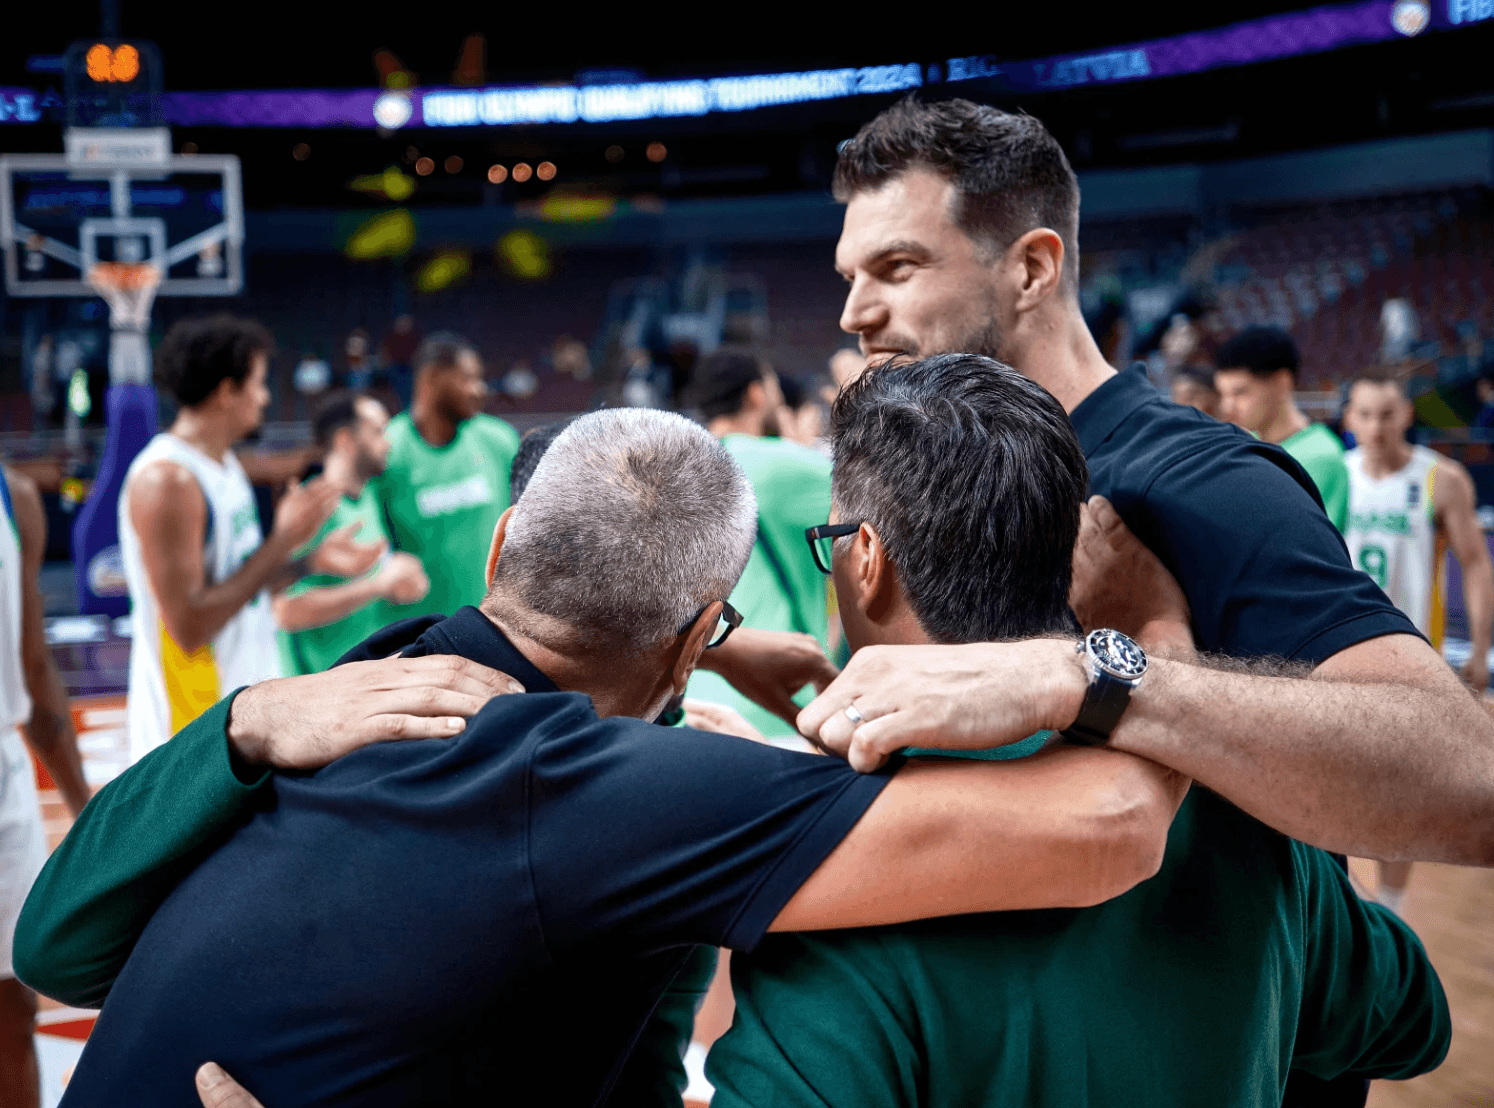 Fraîchement nommé entraîneur, Tiago Splitter devra « continuer à construire le Paris Basketball »